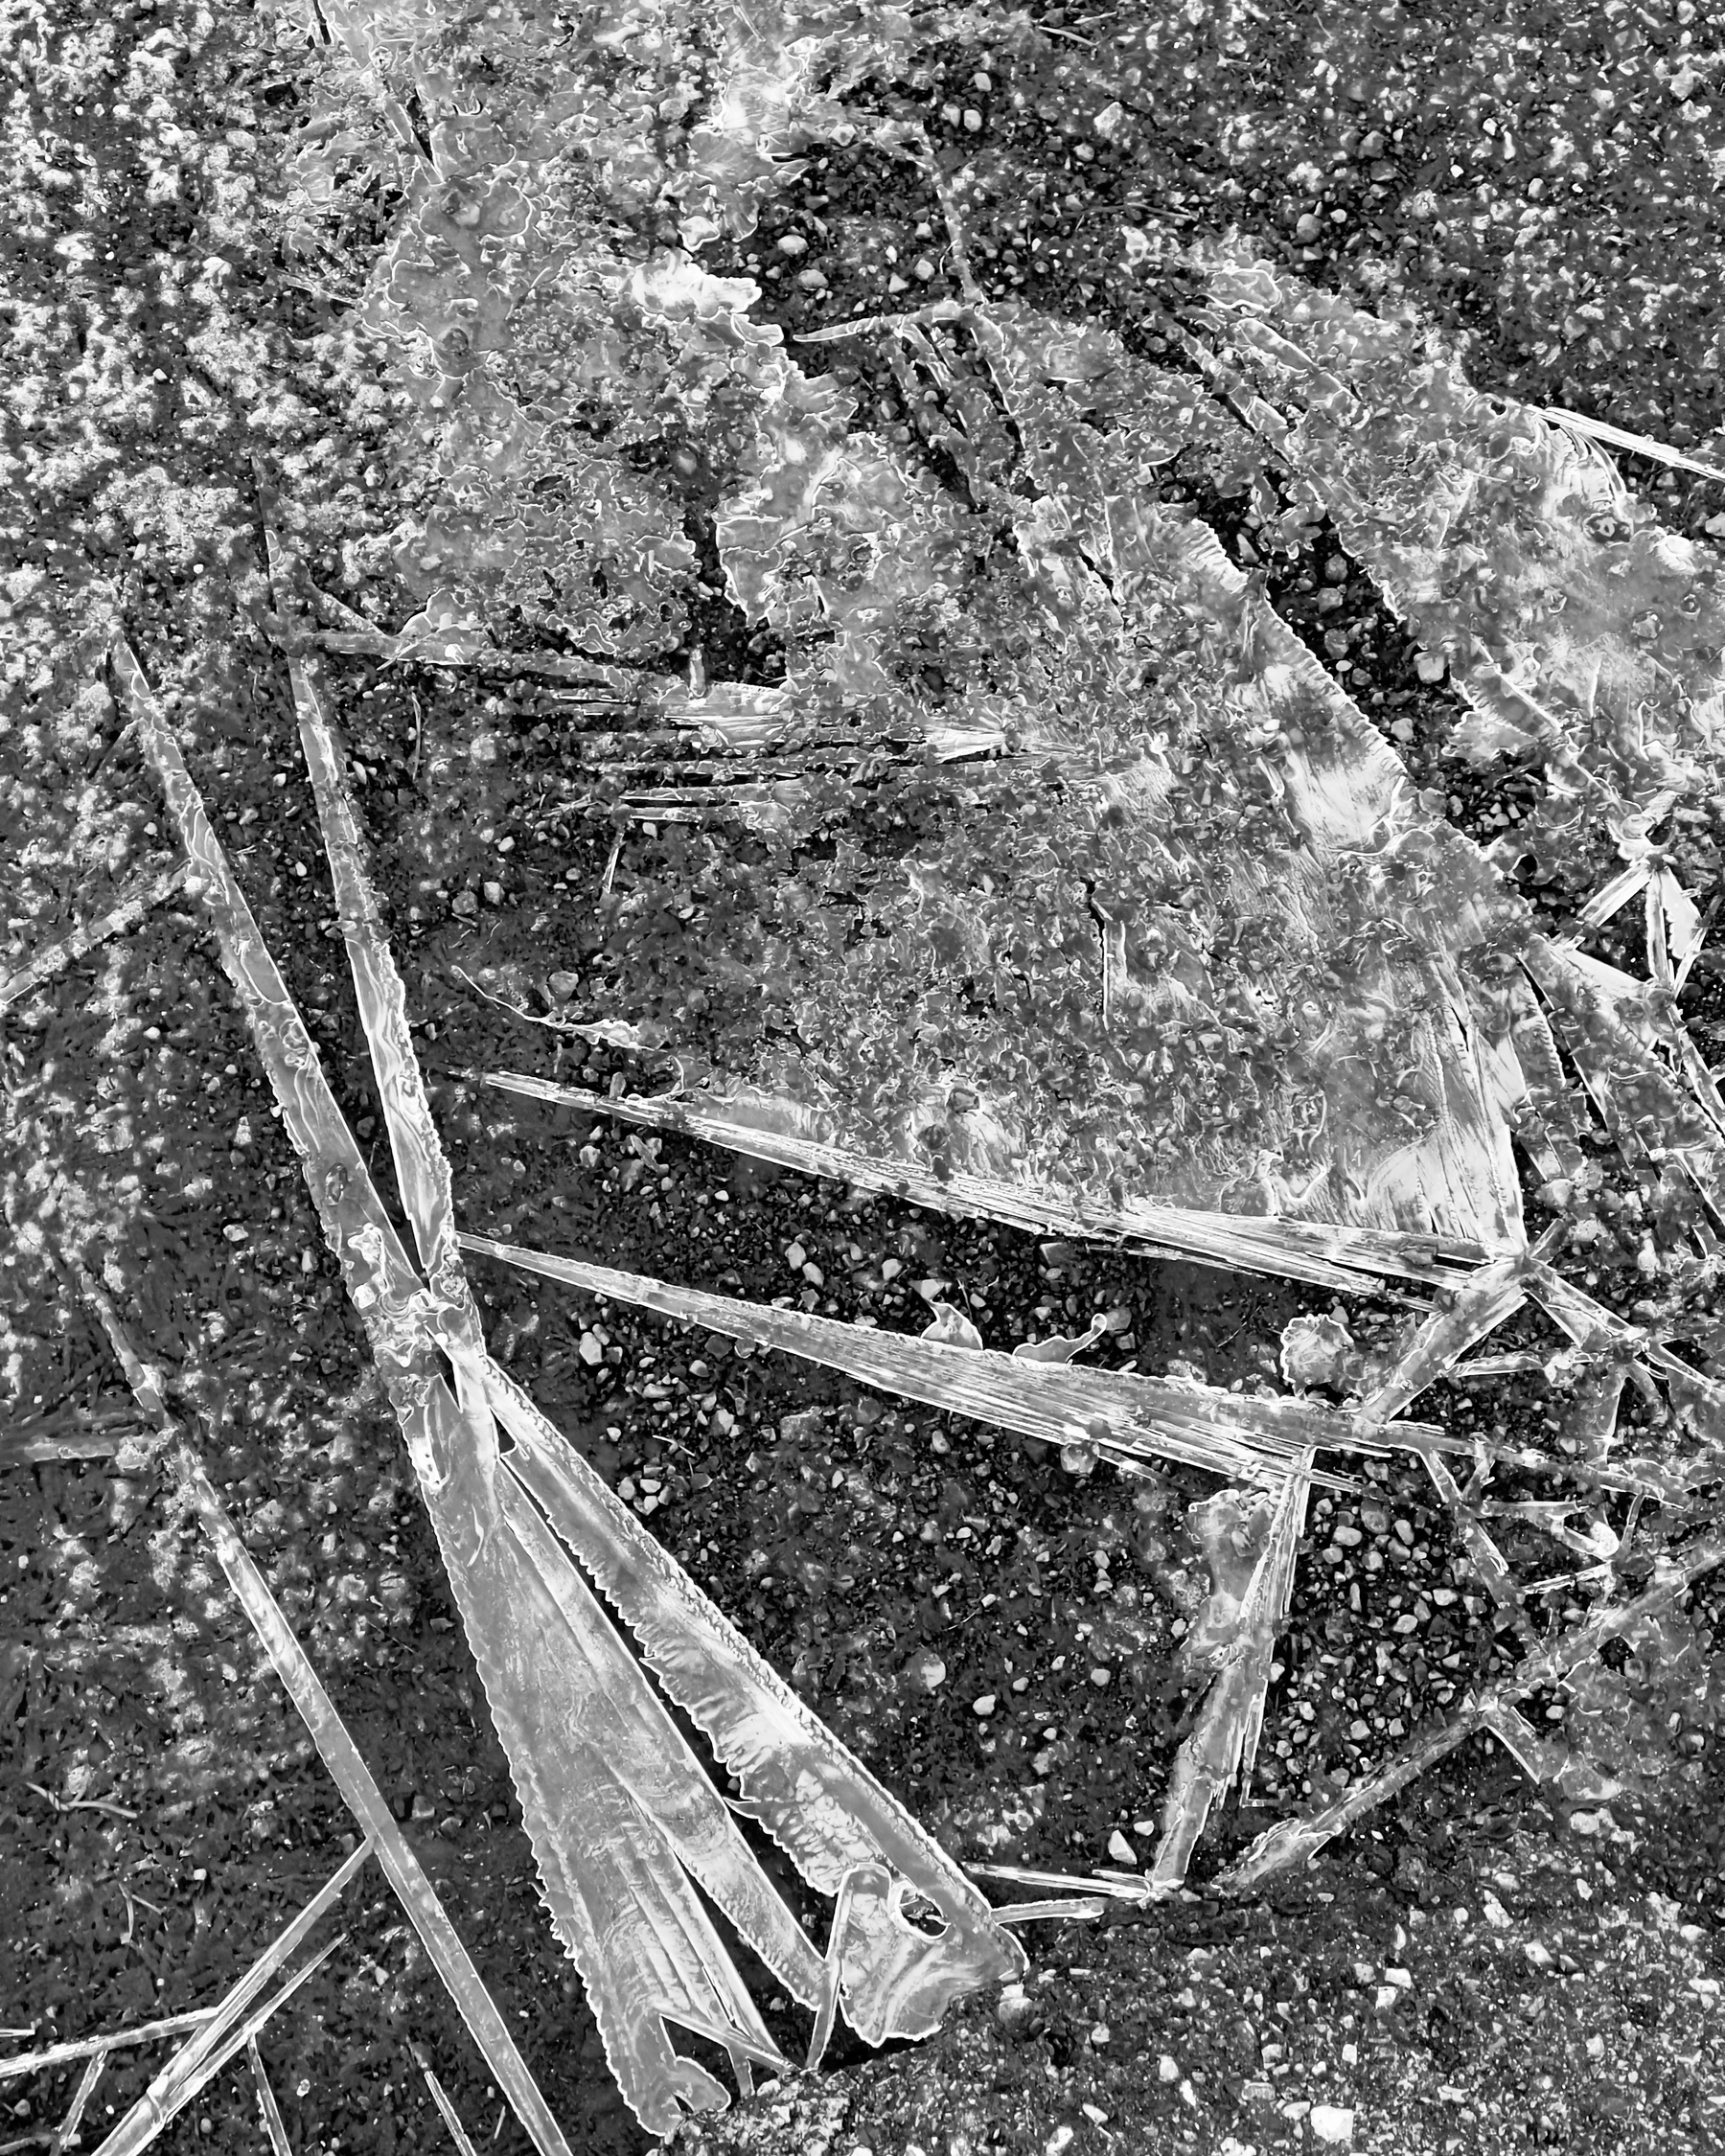 Ice crystals on asphalt.